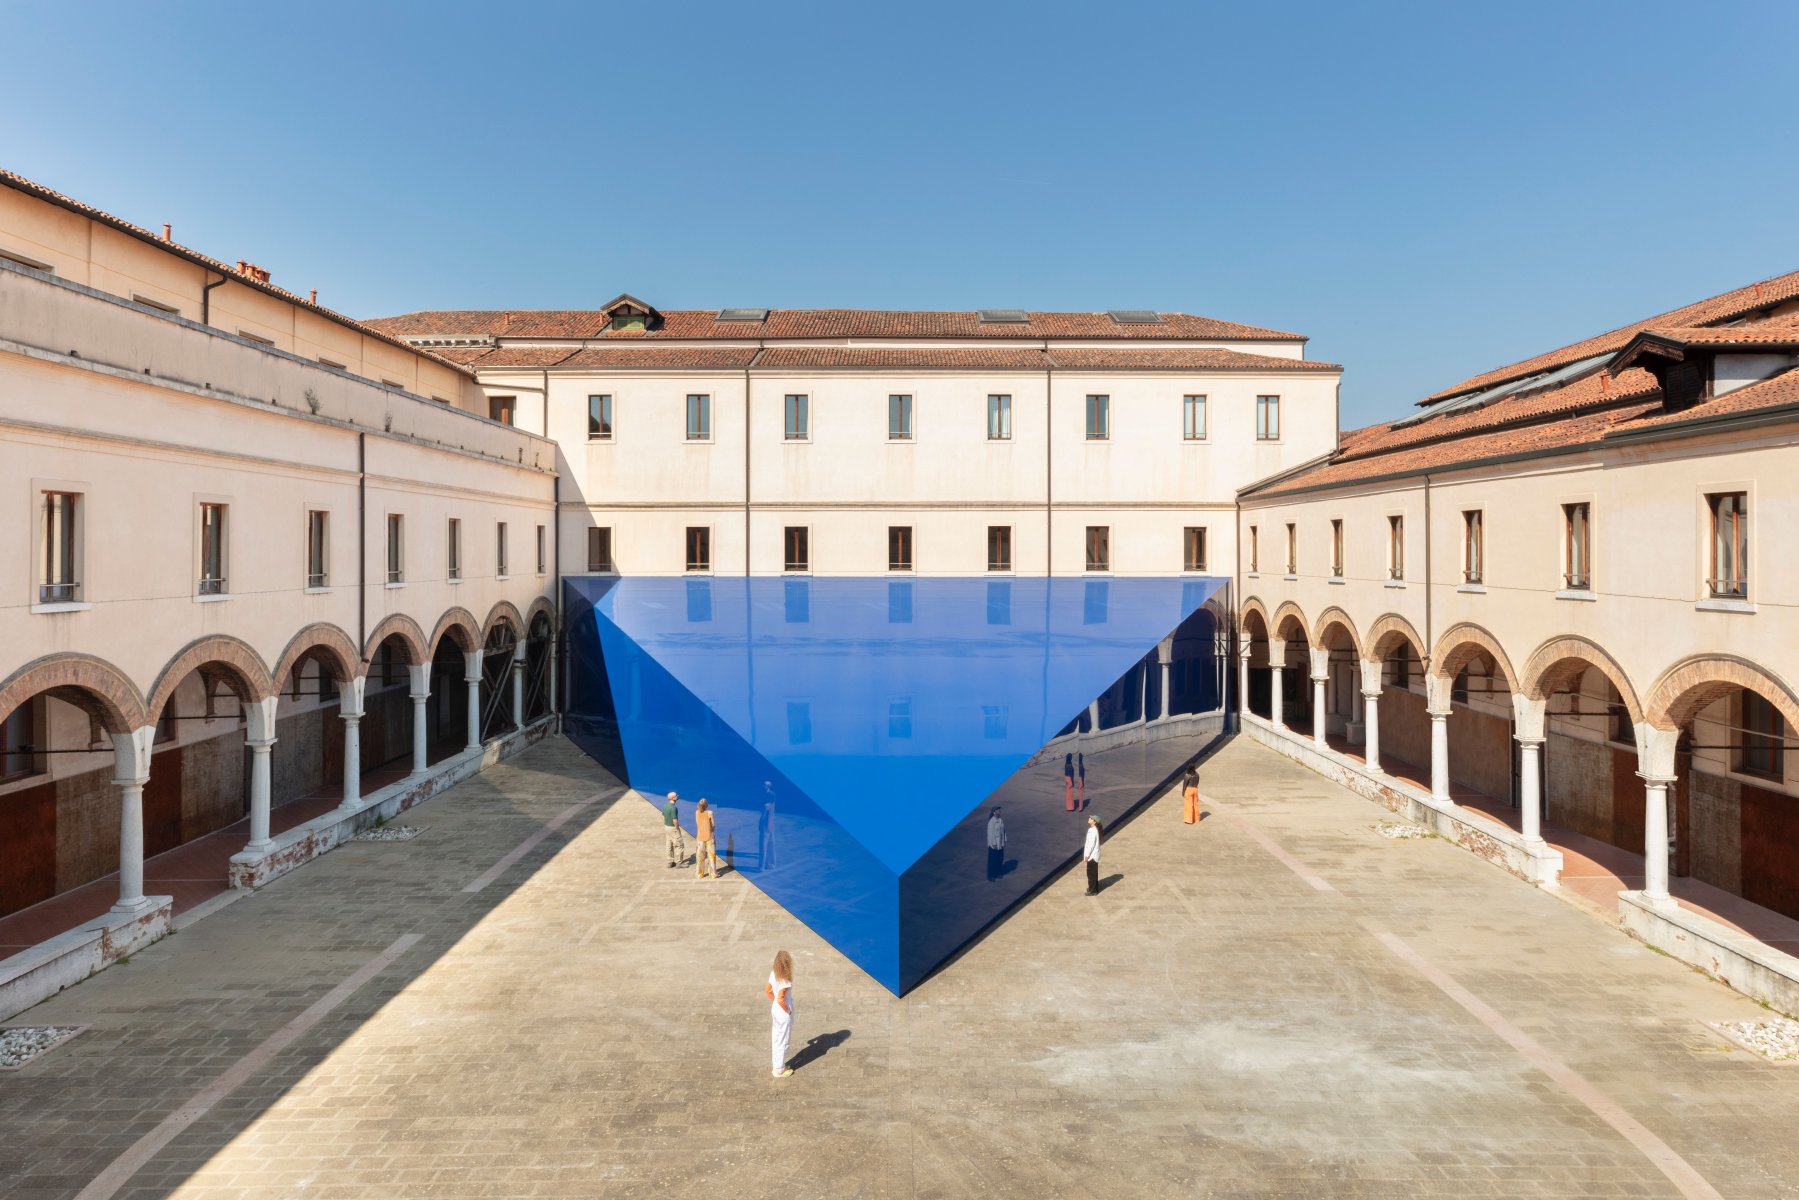 LAS-Art-Foundation-or-UNA-UNLESS-Pavilion-at-Accademia-di-Belle-Arti-di-Venezia-or-3.jpg